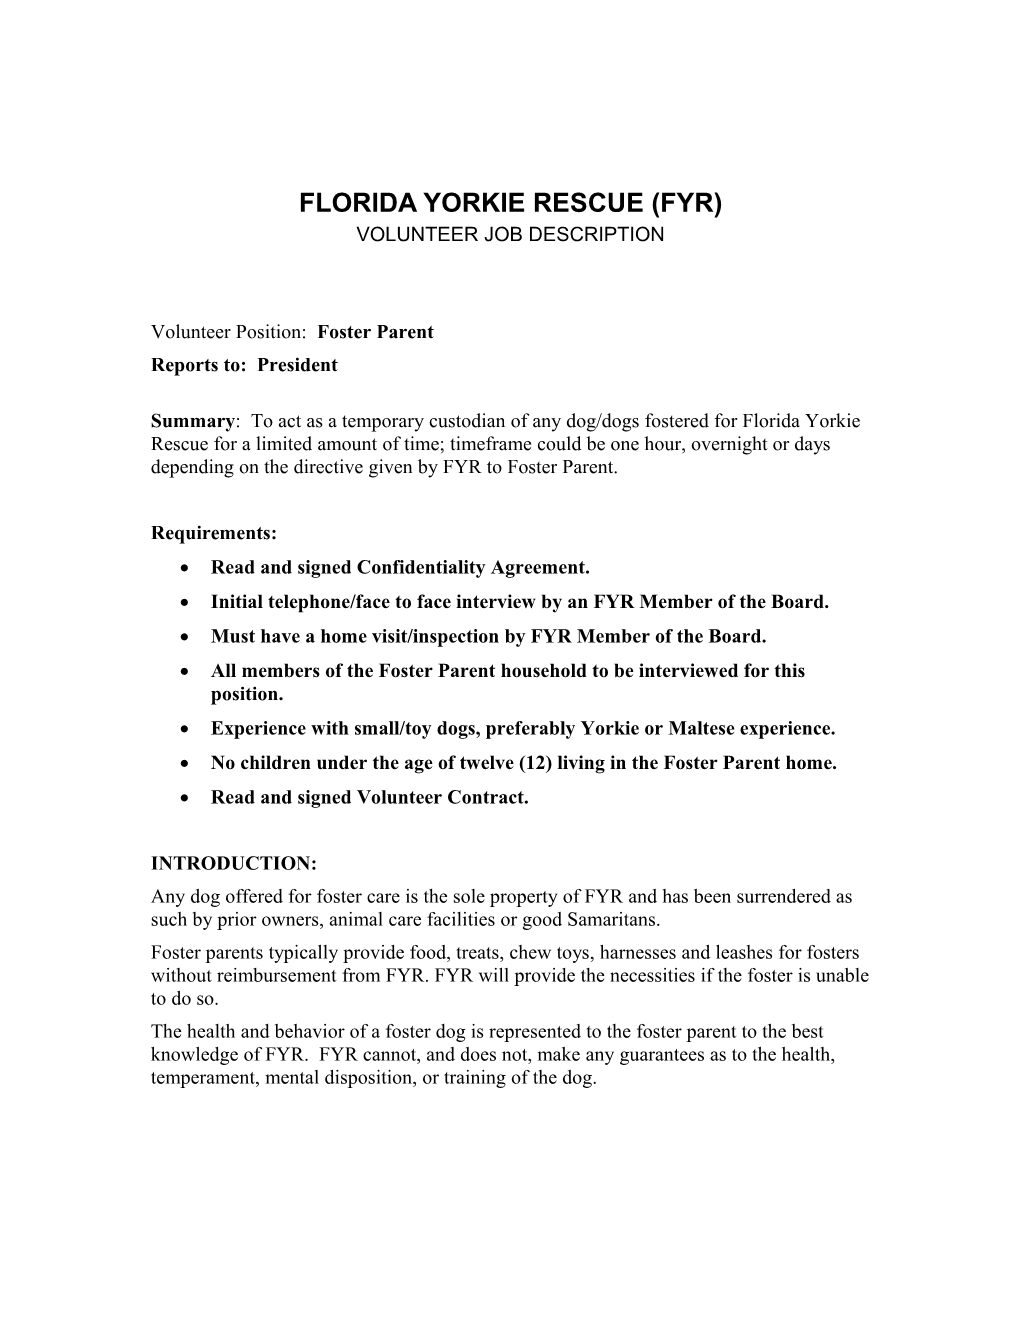 Florida Yorkie Rescue (Fyr)